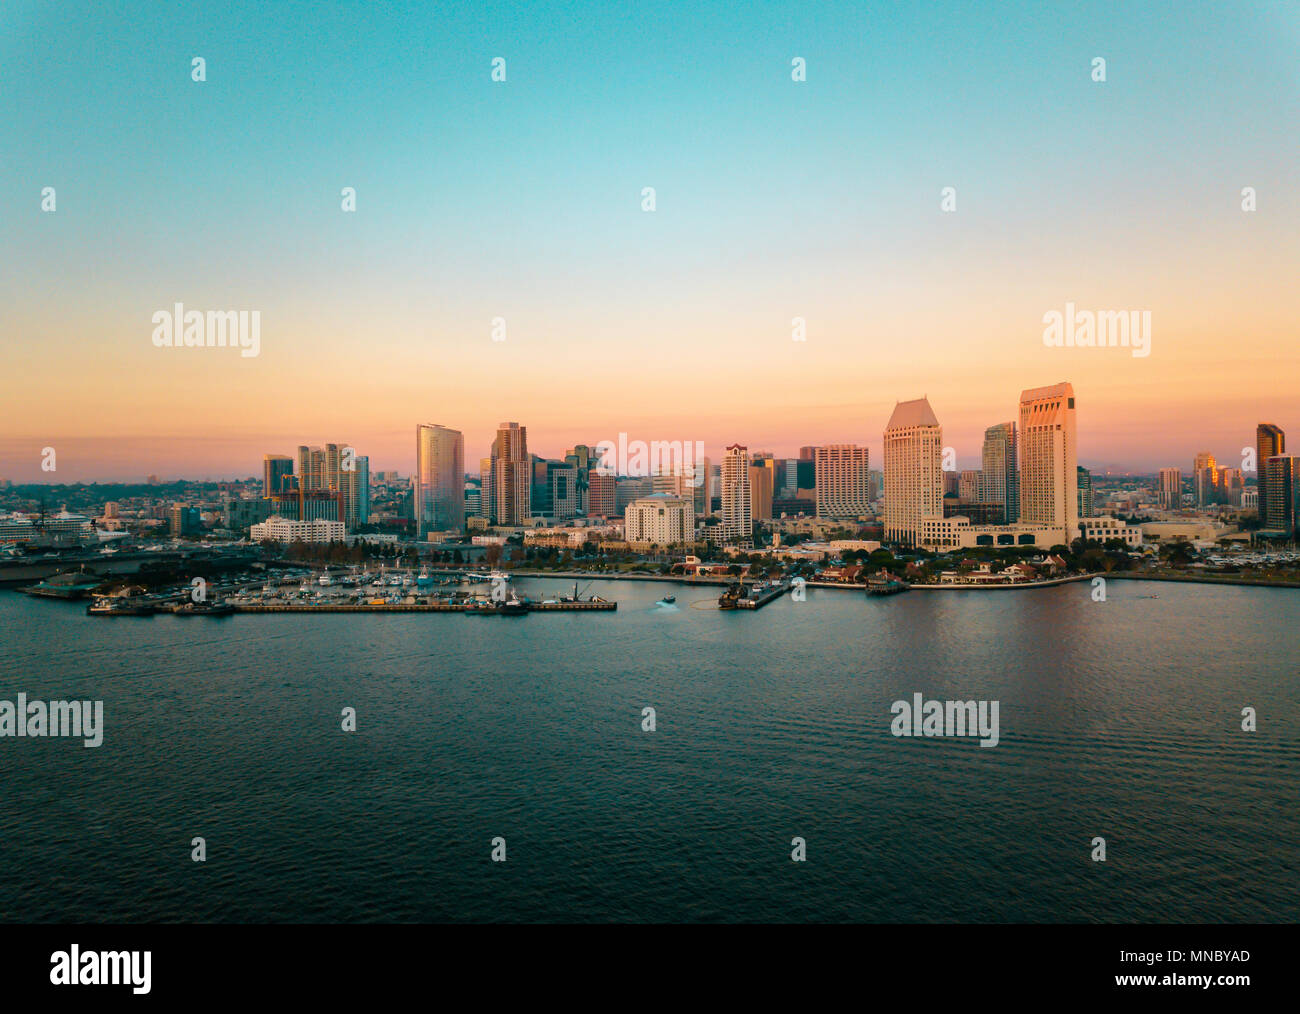 San Diego Bay area paesaggio urbano con edifici alti e l'oceano al tramonto Foto Stock